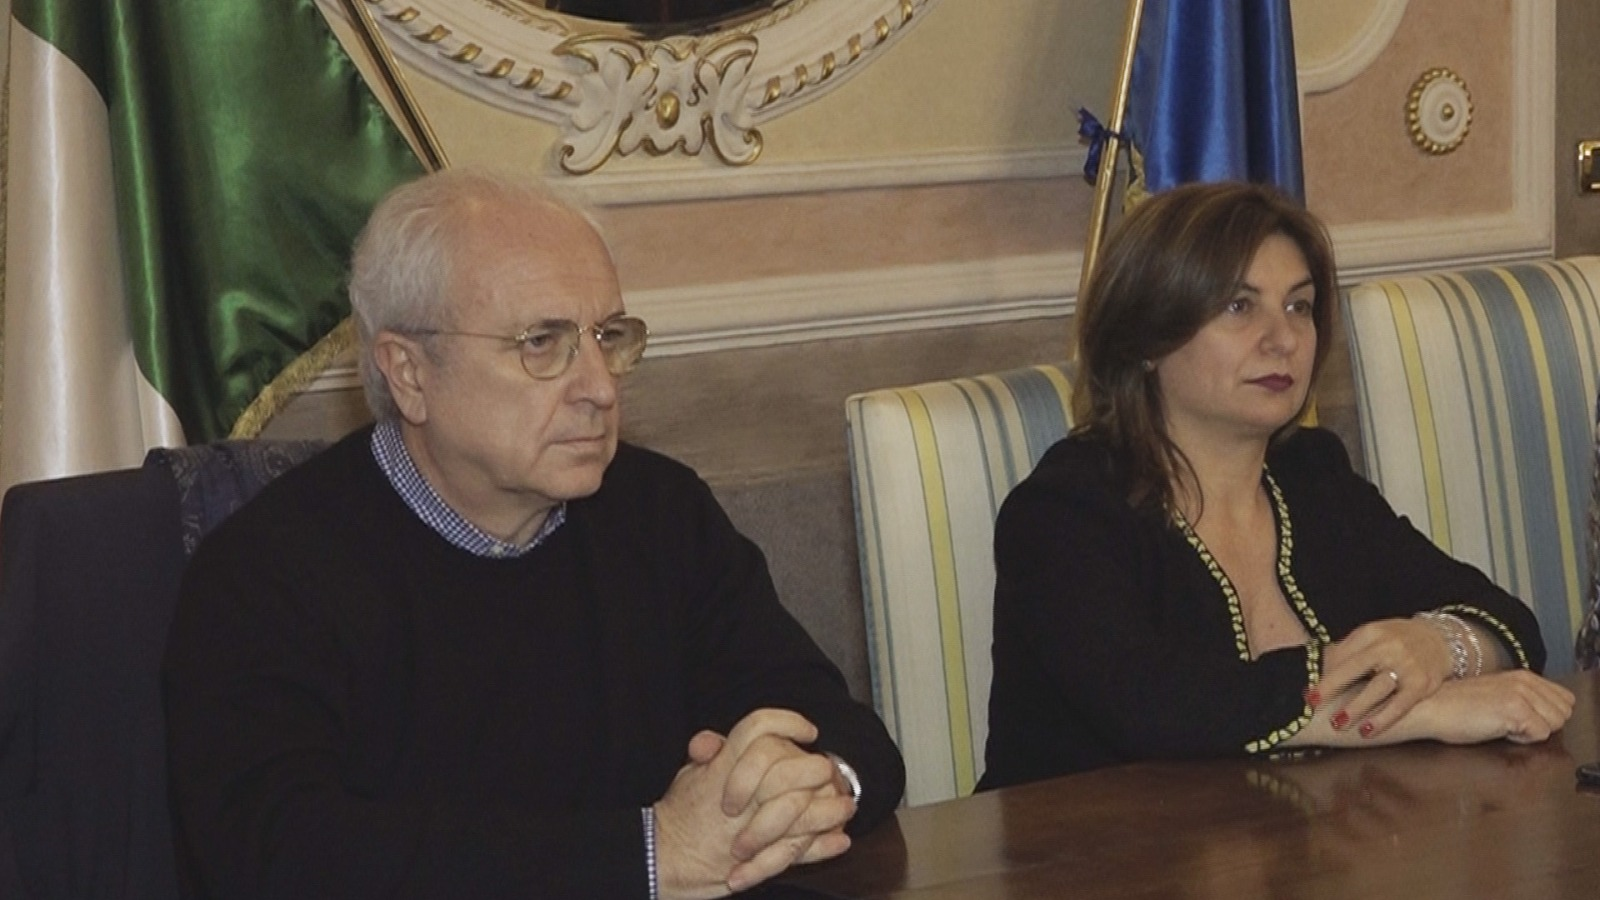 Solofra| Ex “Landolfi”, Morgante e Pizzuti declinano l’invito al Consiglio comunale allargato